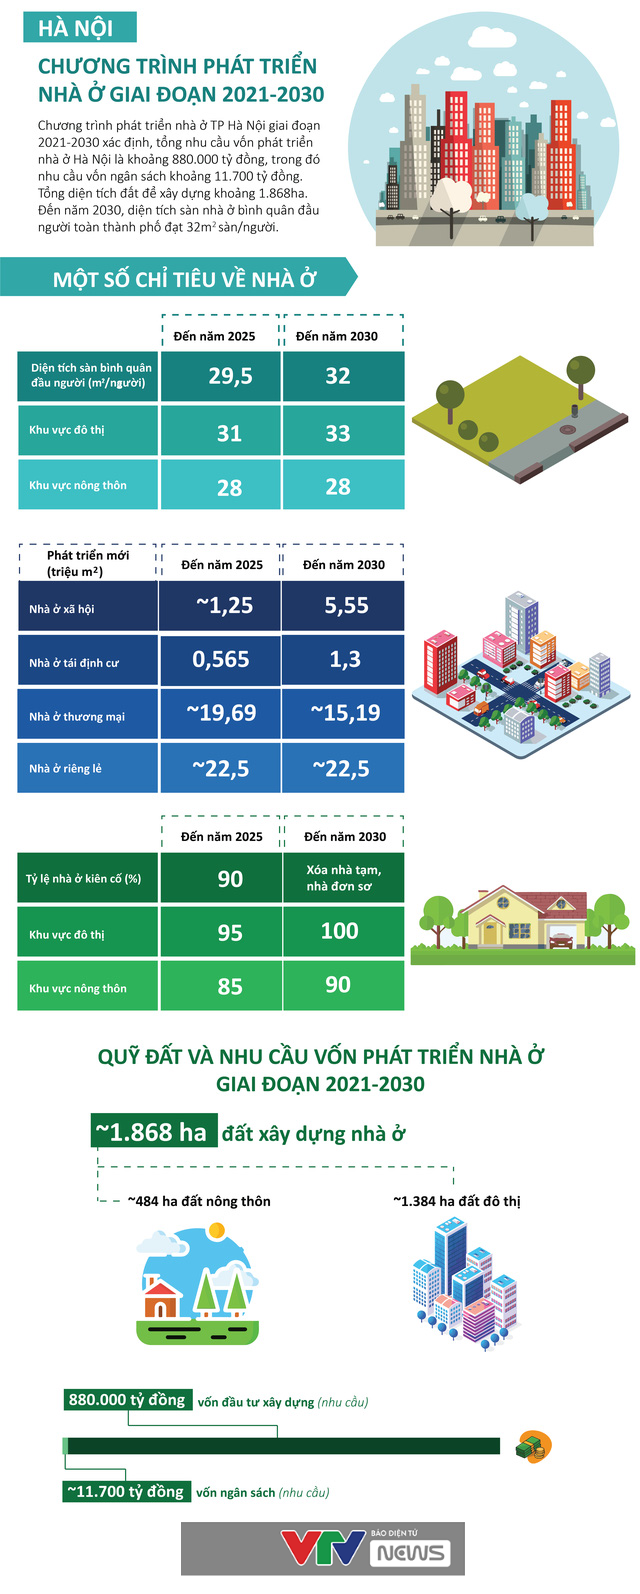 [Infographic] Chương trình phát triển nhà ở Hà Nội giai đoạn 2021 - 2030 - Ảnh 1.